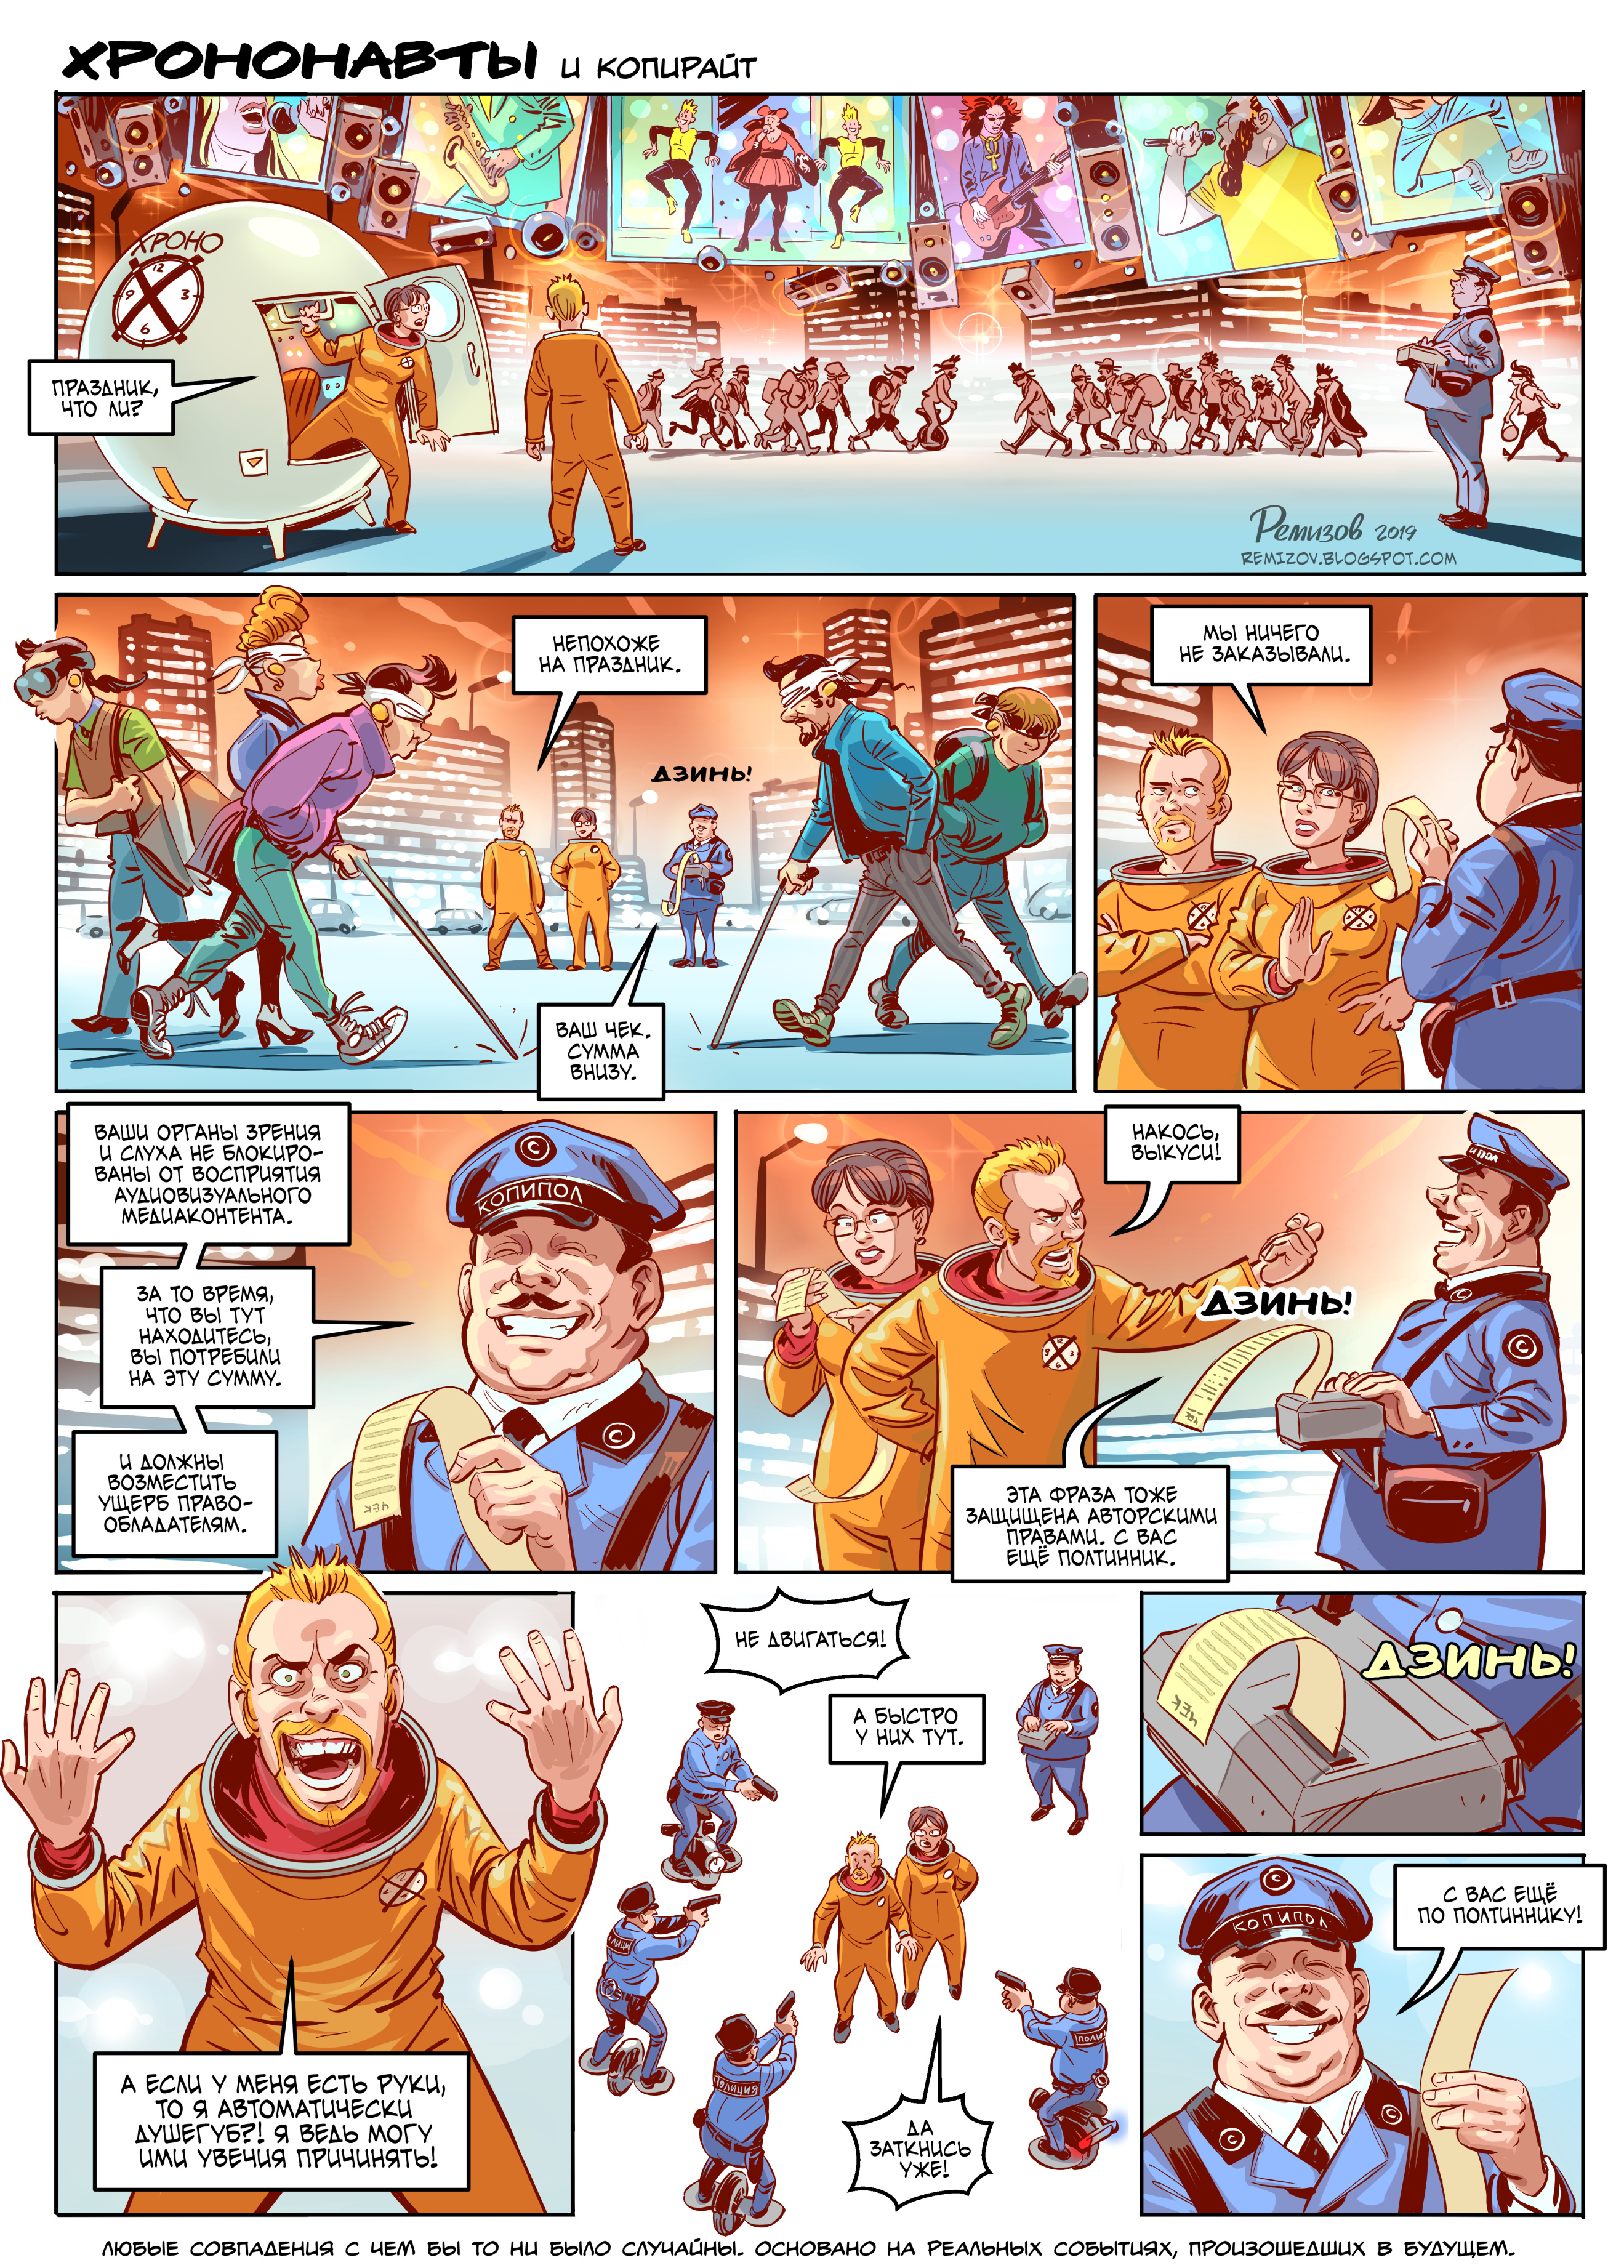 Как Александр Ремизов создавал комиксы для «Мира фантастики» 5